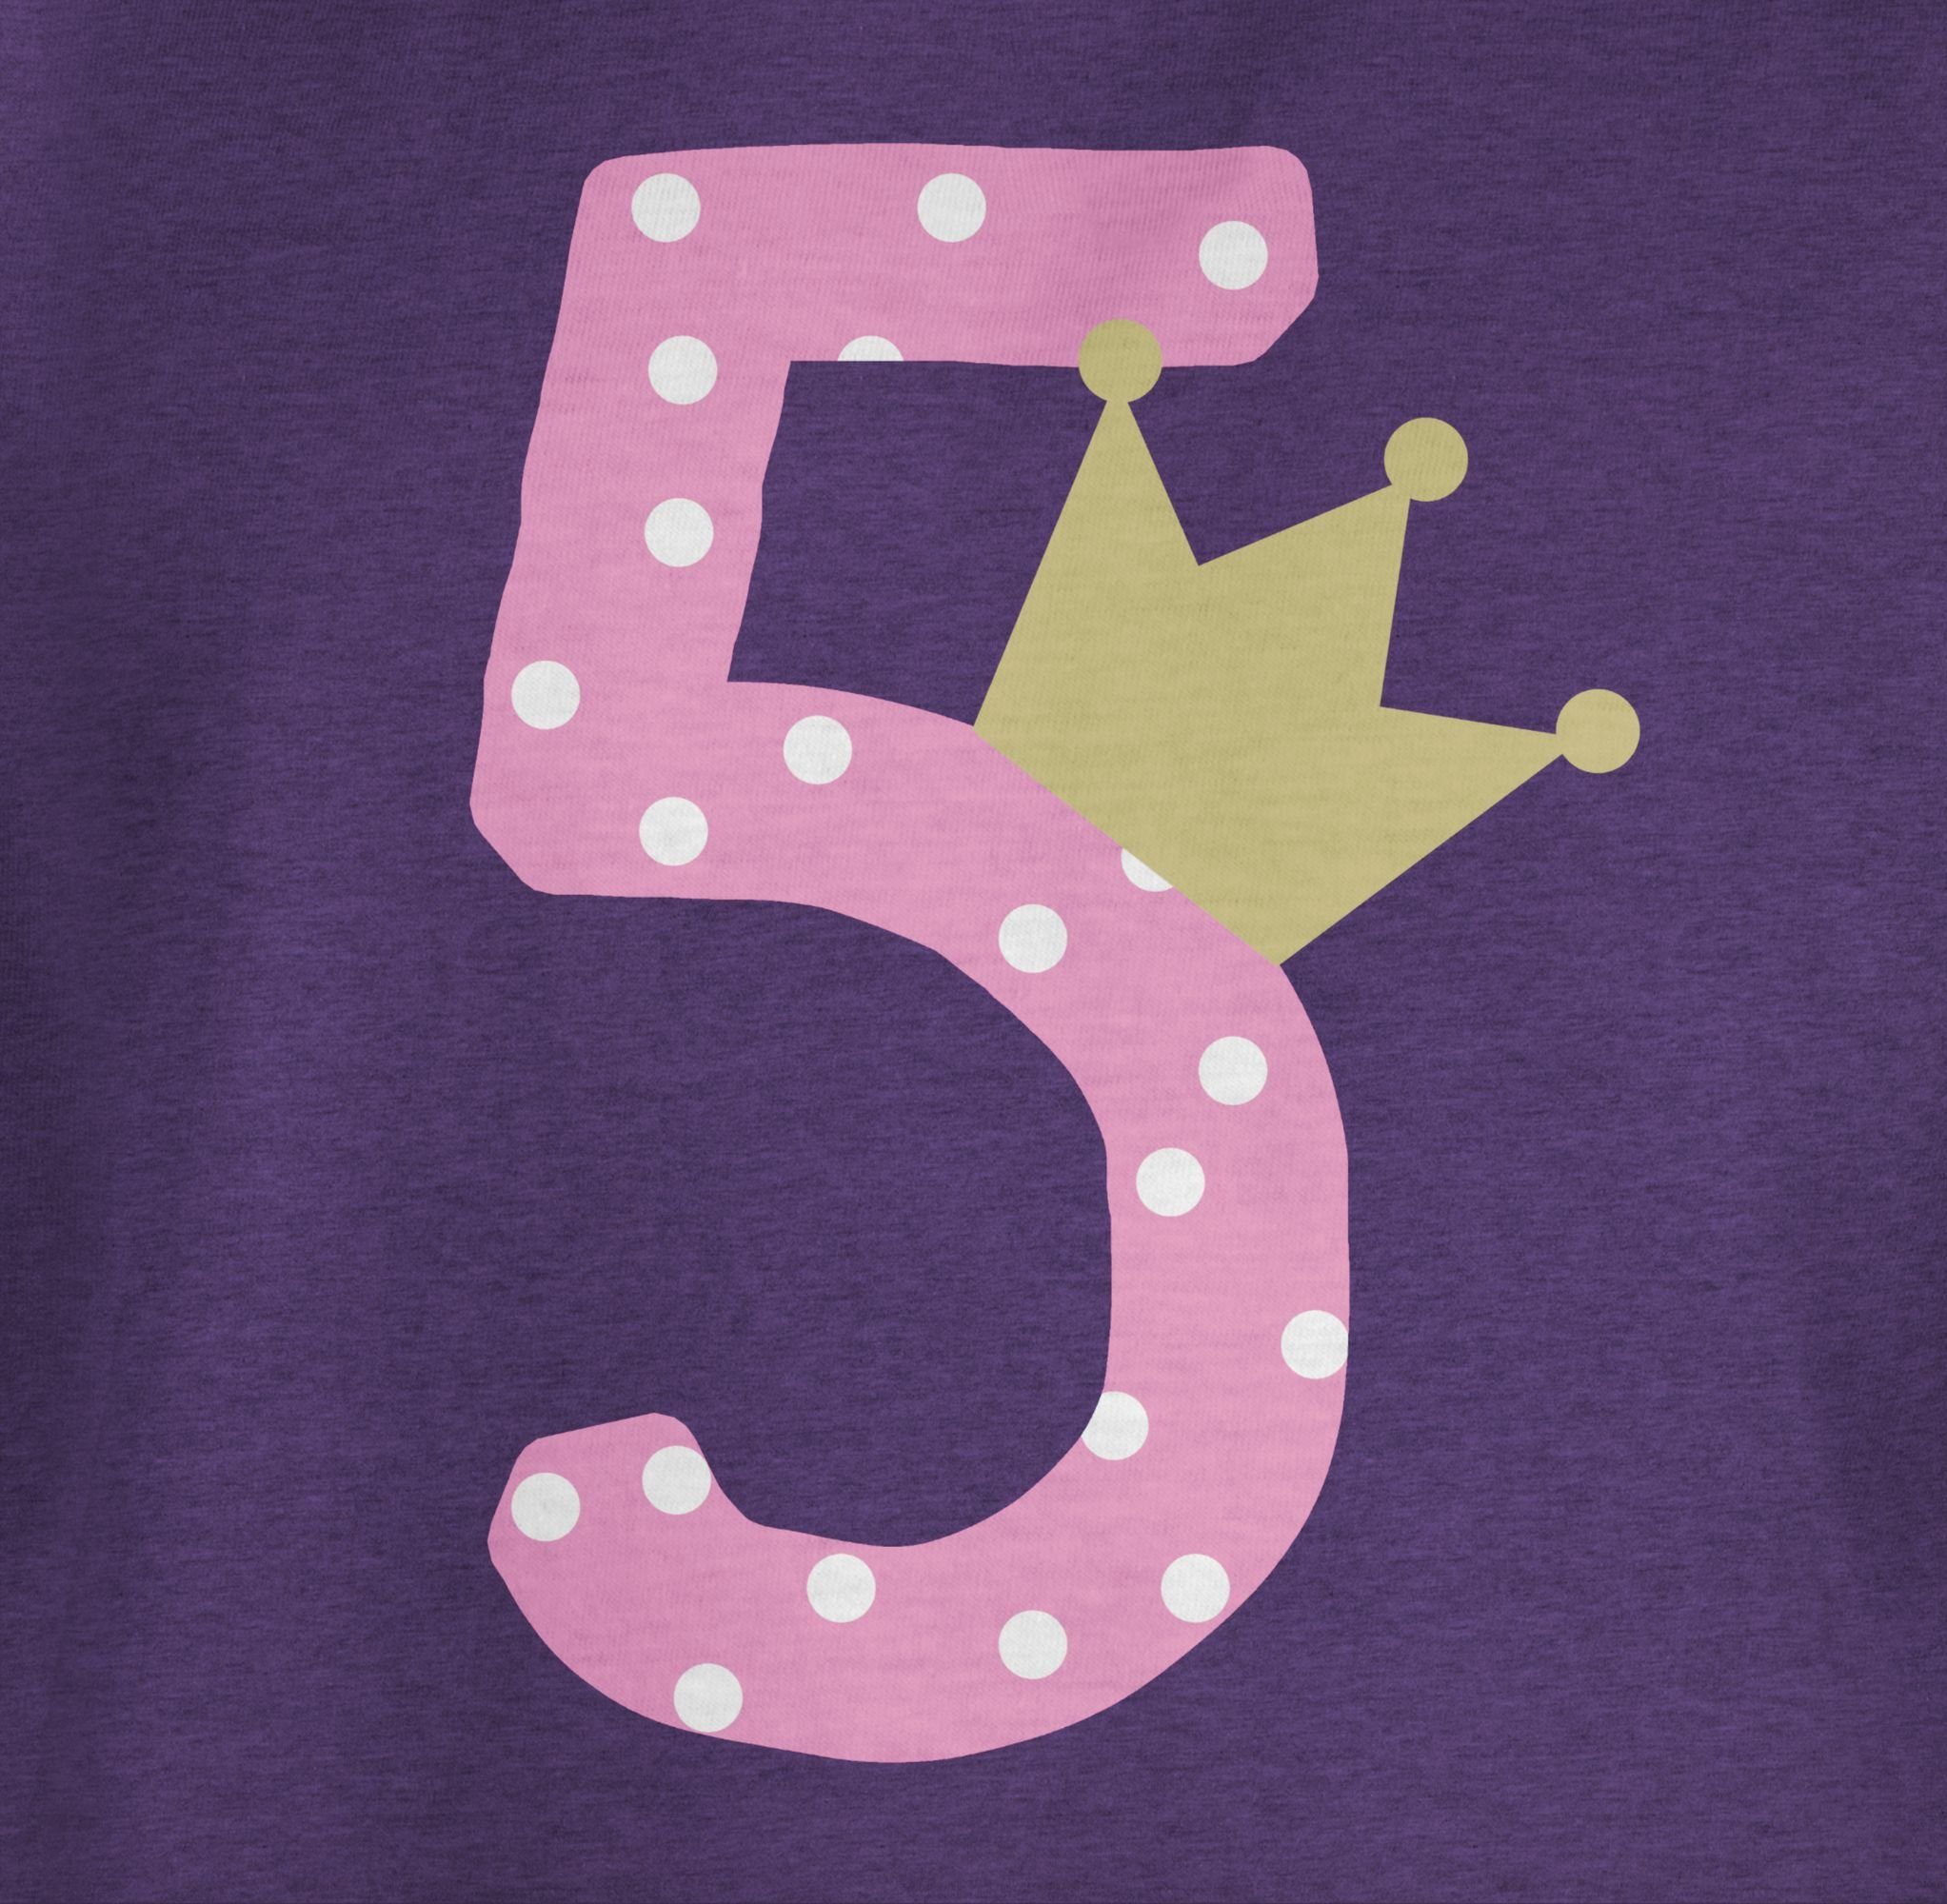 Krone 5. Shirtracer Fünfter Meliert Fünf Geburtstag T-Shirt Mädchen 2 Lila